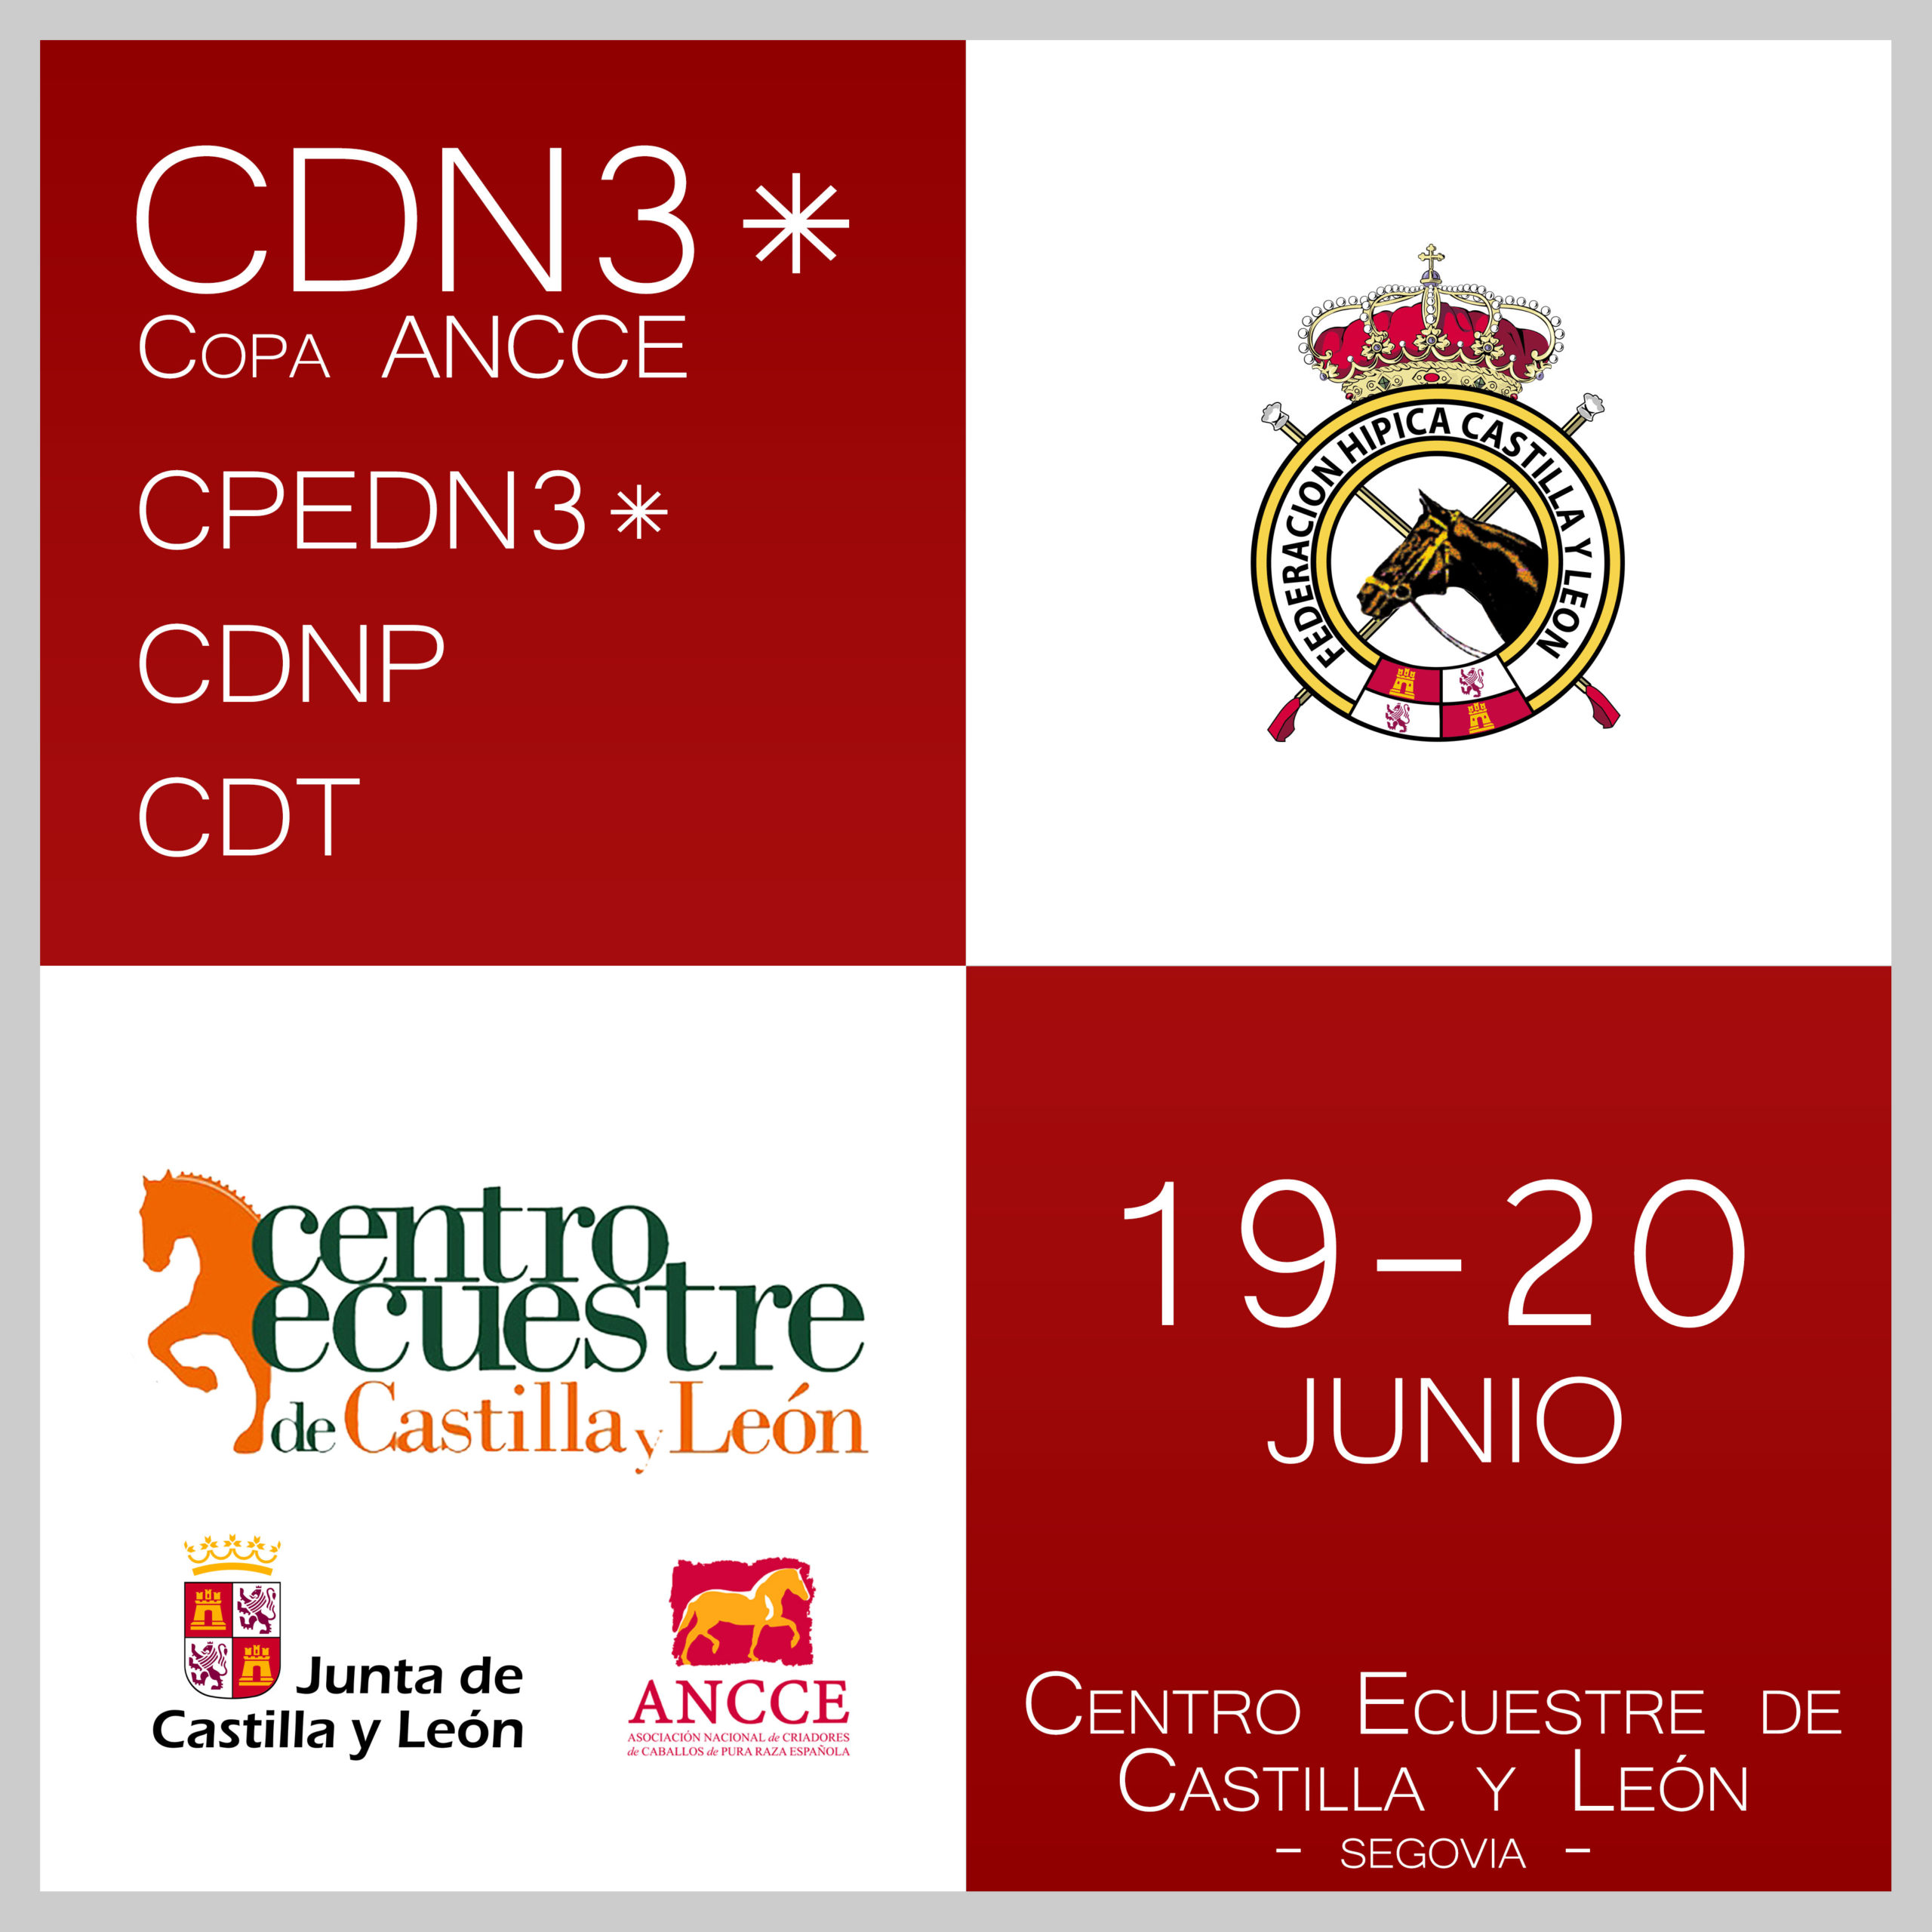 CDN3* Centro Ecuestre Castilla y León | jun'21